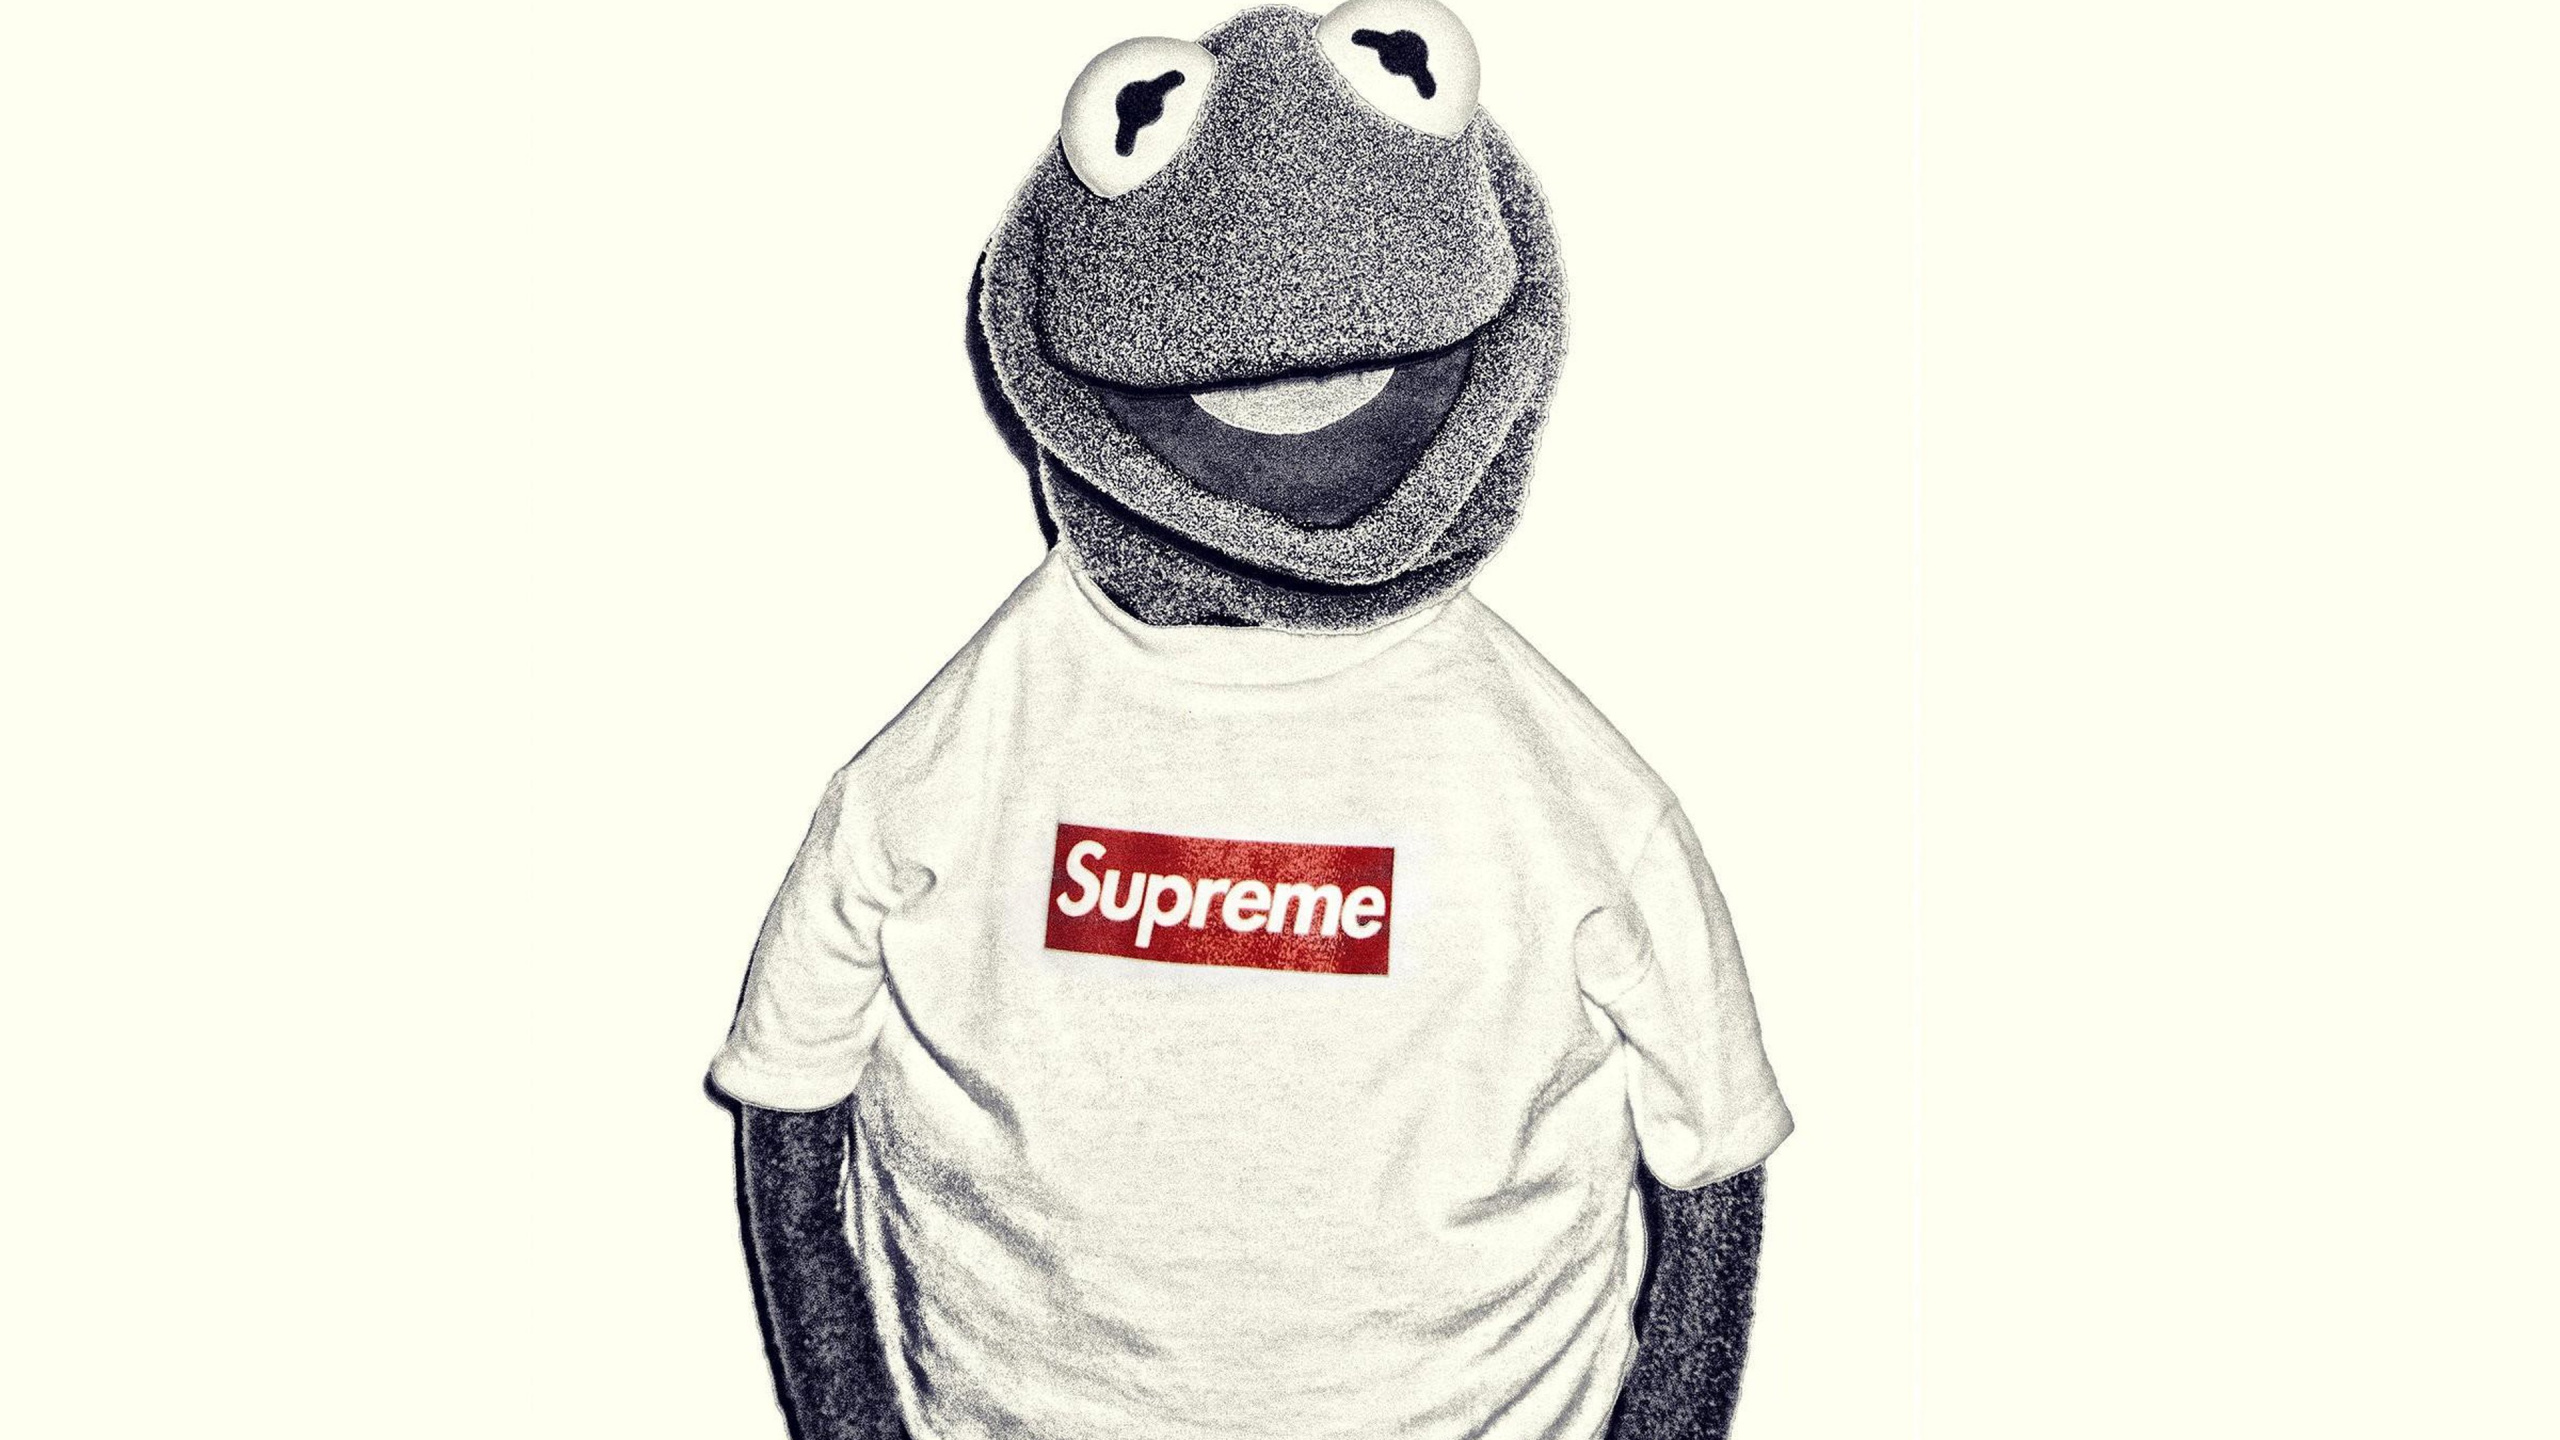 Kermit la Grenouille, Suprême, Les Vêtements D'extérieur, T-shirt, Louis Vuitton. Wallpaper in 2560x1440 Resolution